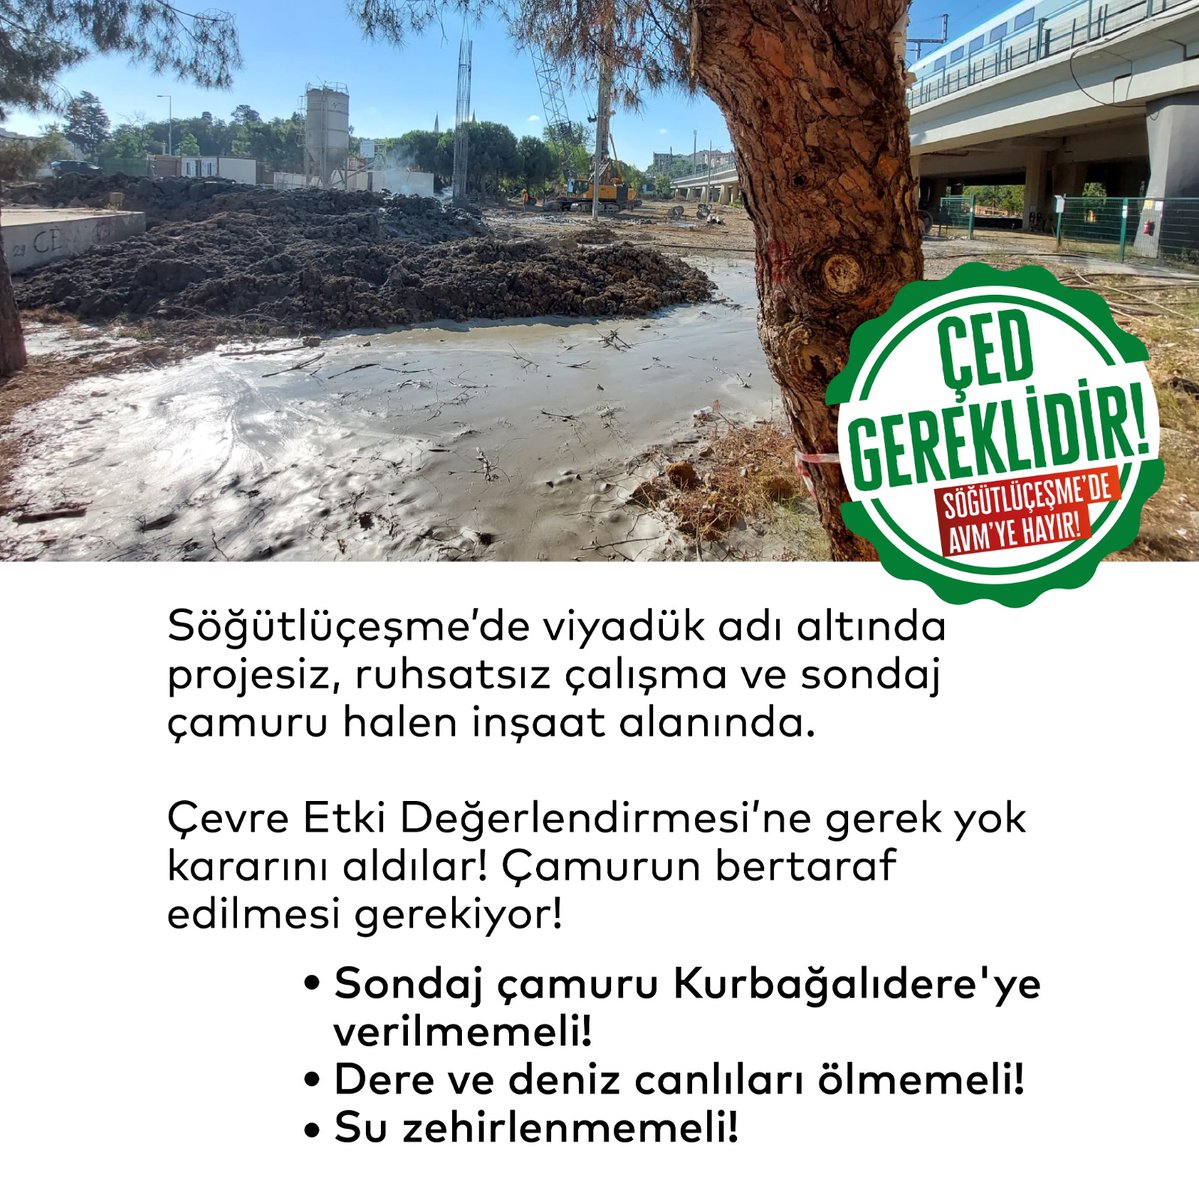 Omuz ver yeşil alanlarımızı birlikte savunalım🦉
Söğütlüçeşme'de yaklaşık 100.000 m2'lik alana Ulaştırma Bakanlığı ve Akfen Holding birlikte AVM ve Otopark Projesi yapmak için 250 ağacı keserek yok etti. 
#SöğütlüçeşmedeKatliamVar